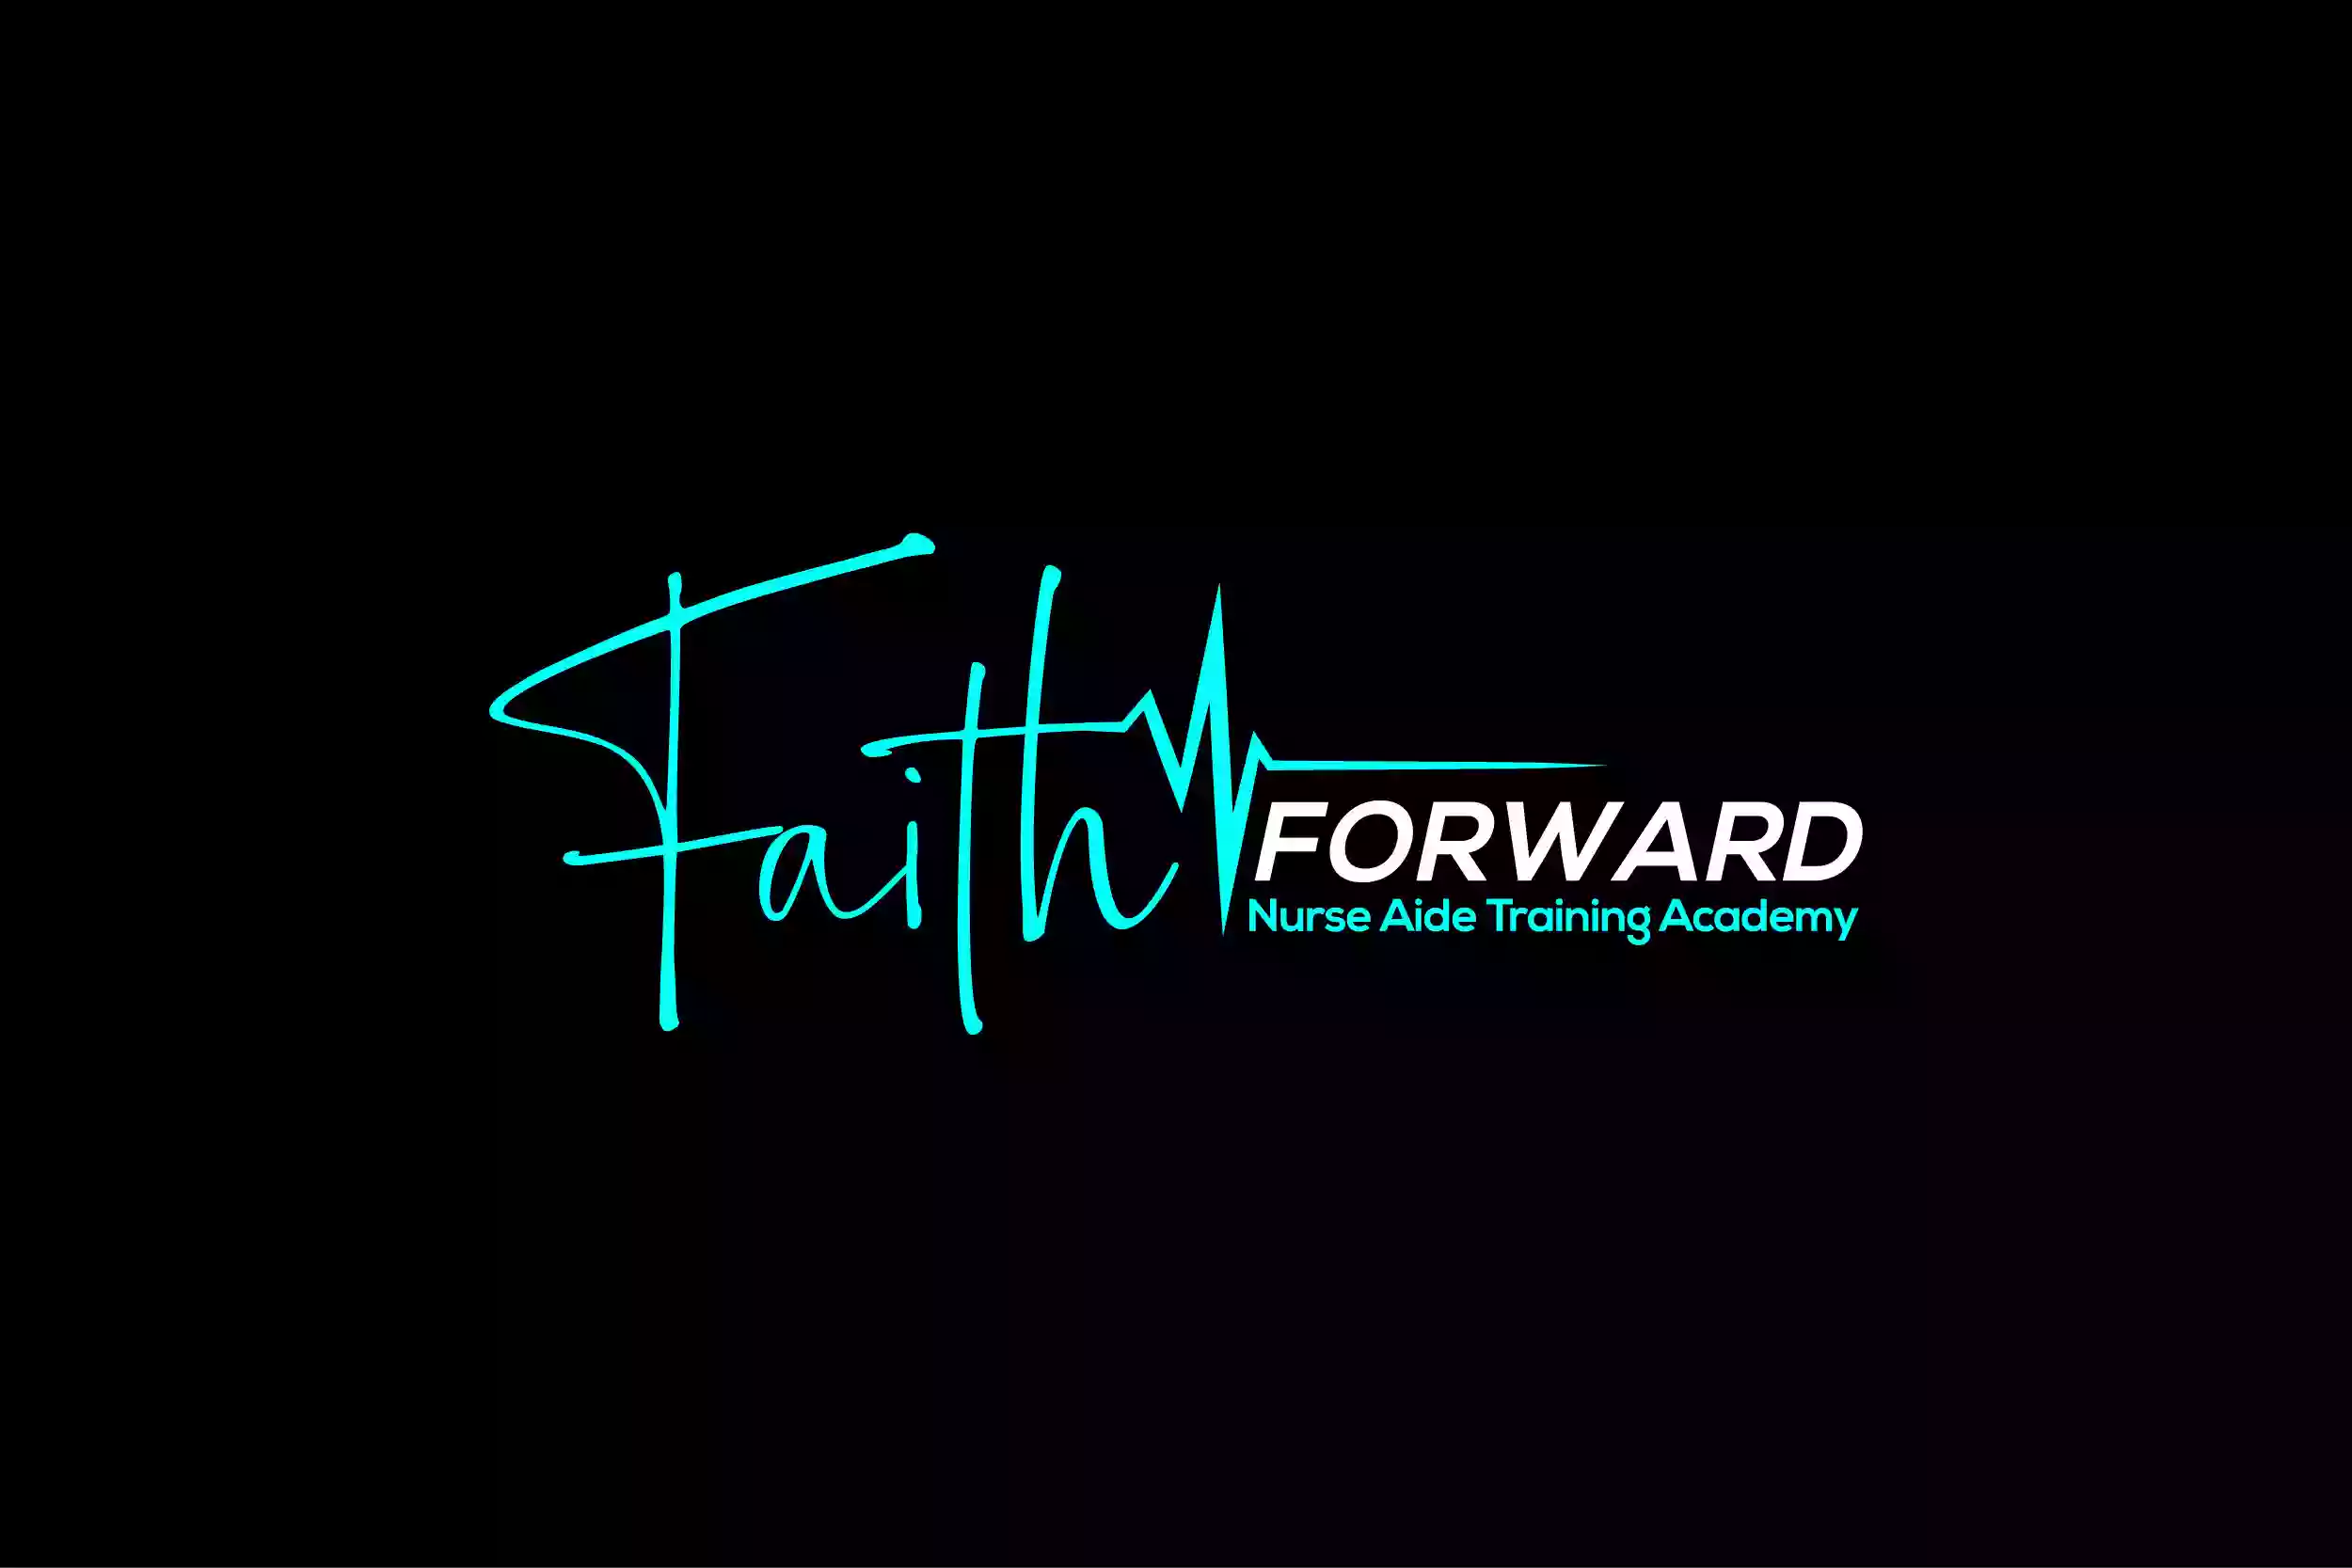 Faith Forward Nurse Aide Training Academy